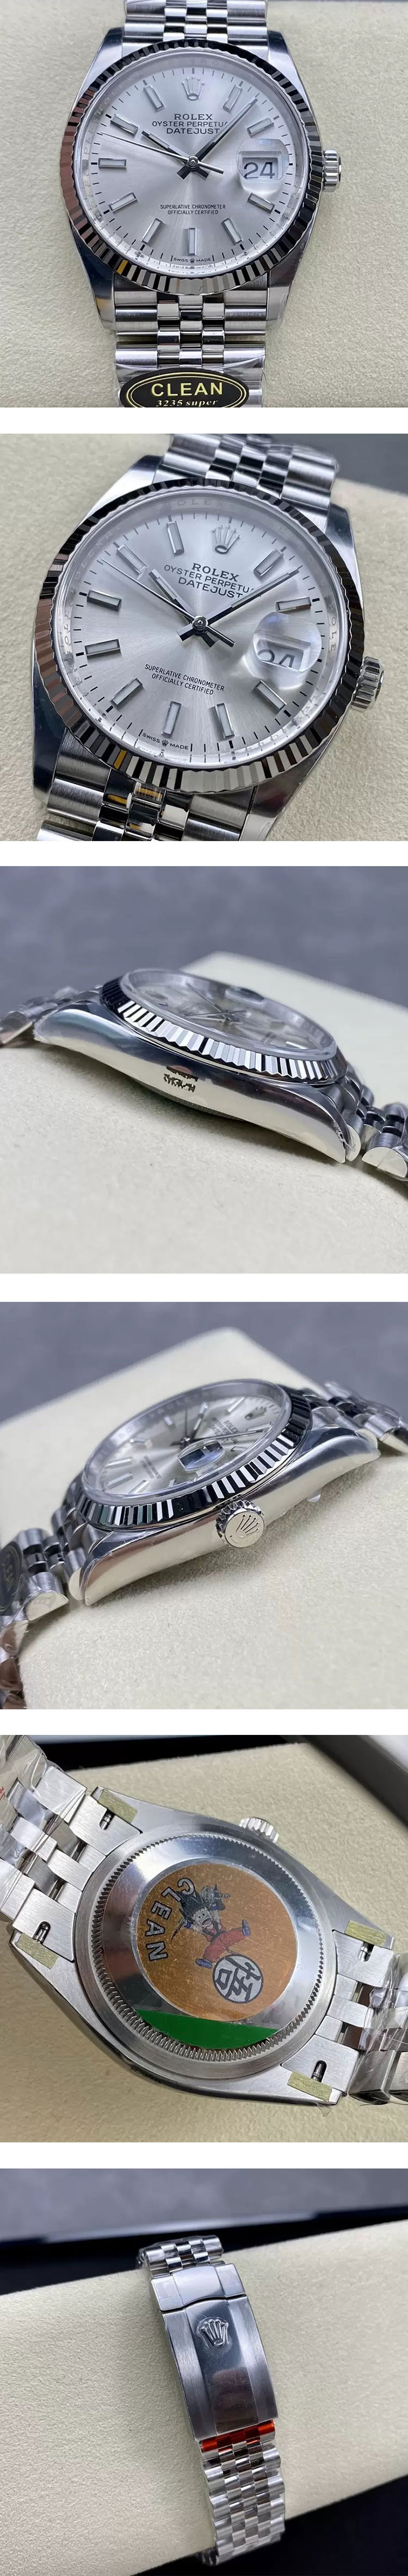 市場最高精密 CLEAN製スーパーコピー時計M126234-0013 デイトジャスト 36mm  シルバー 3235ムーブメント搭載